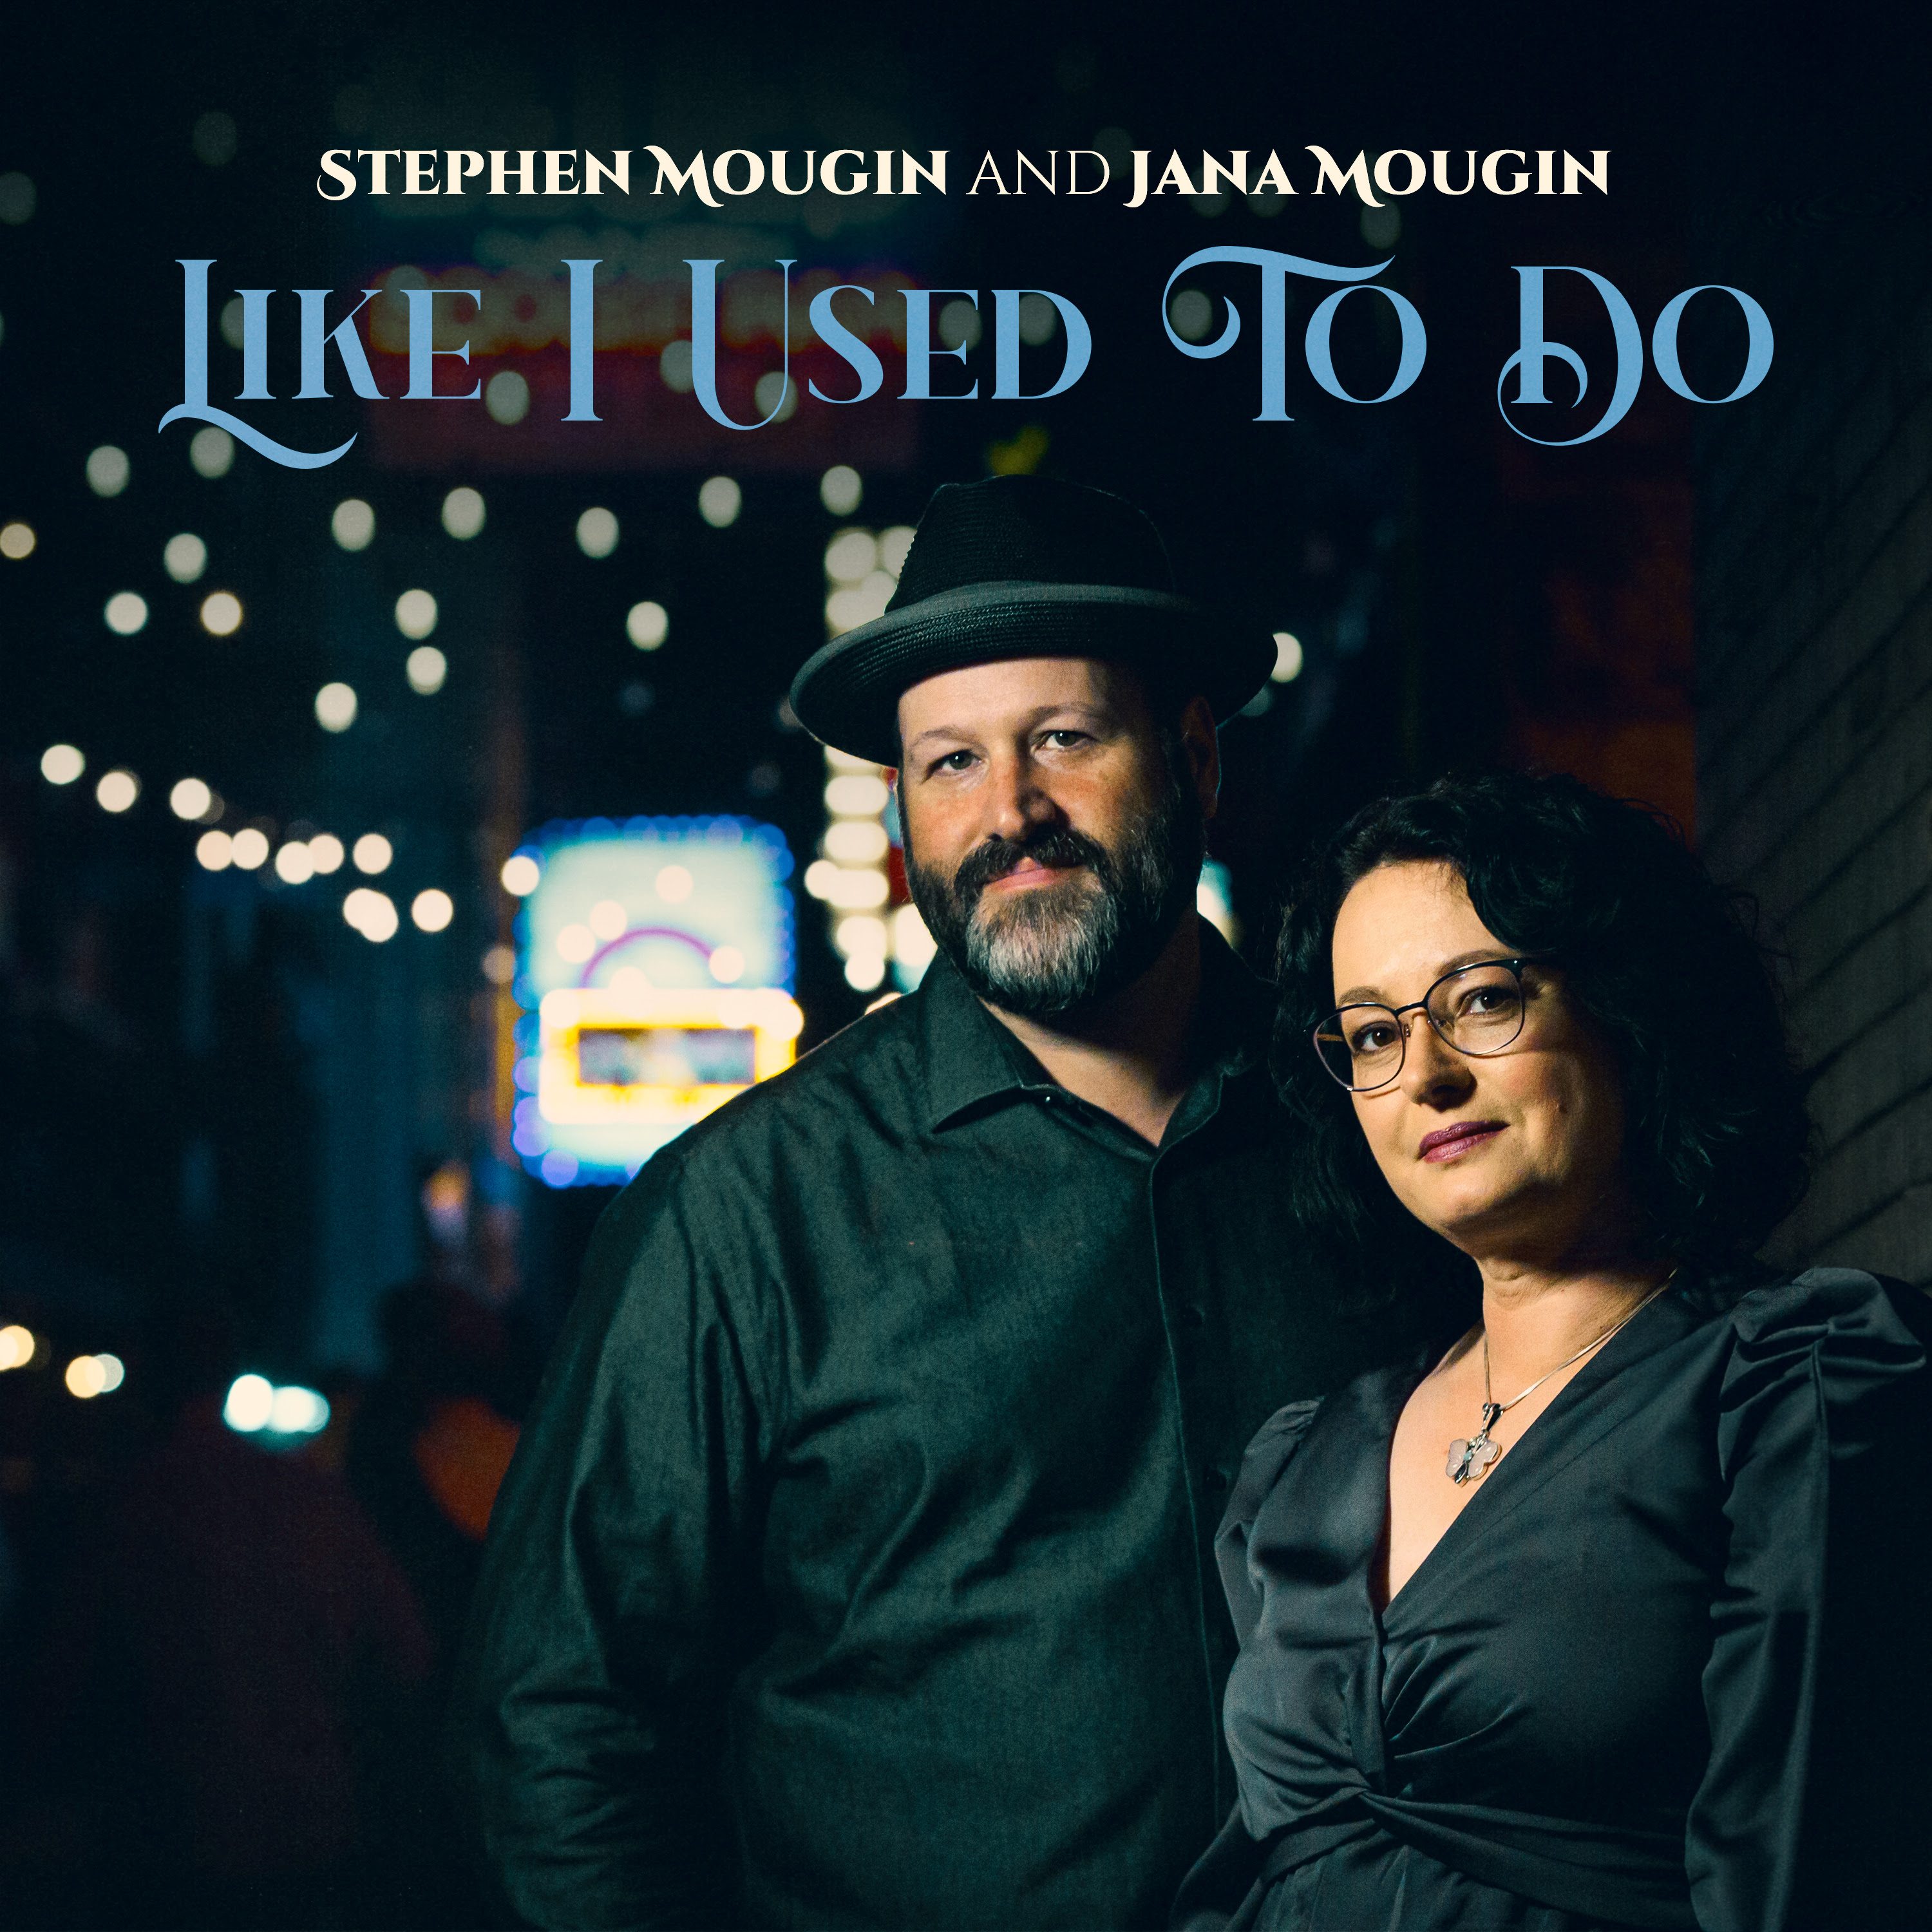 Stephen and Jana Mougin release “Like I Used To Do” as a duet